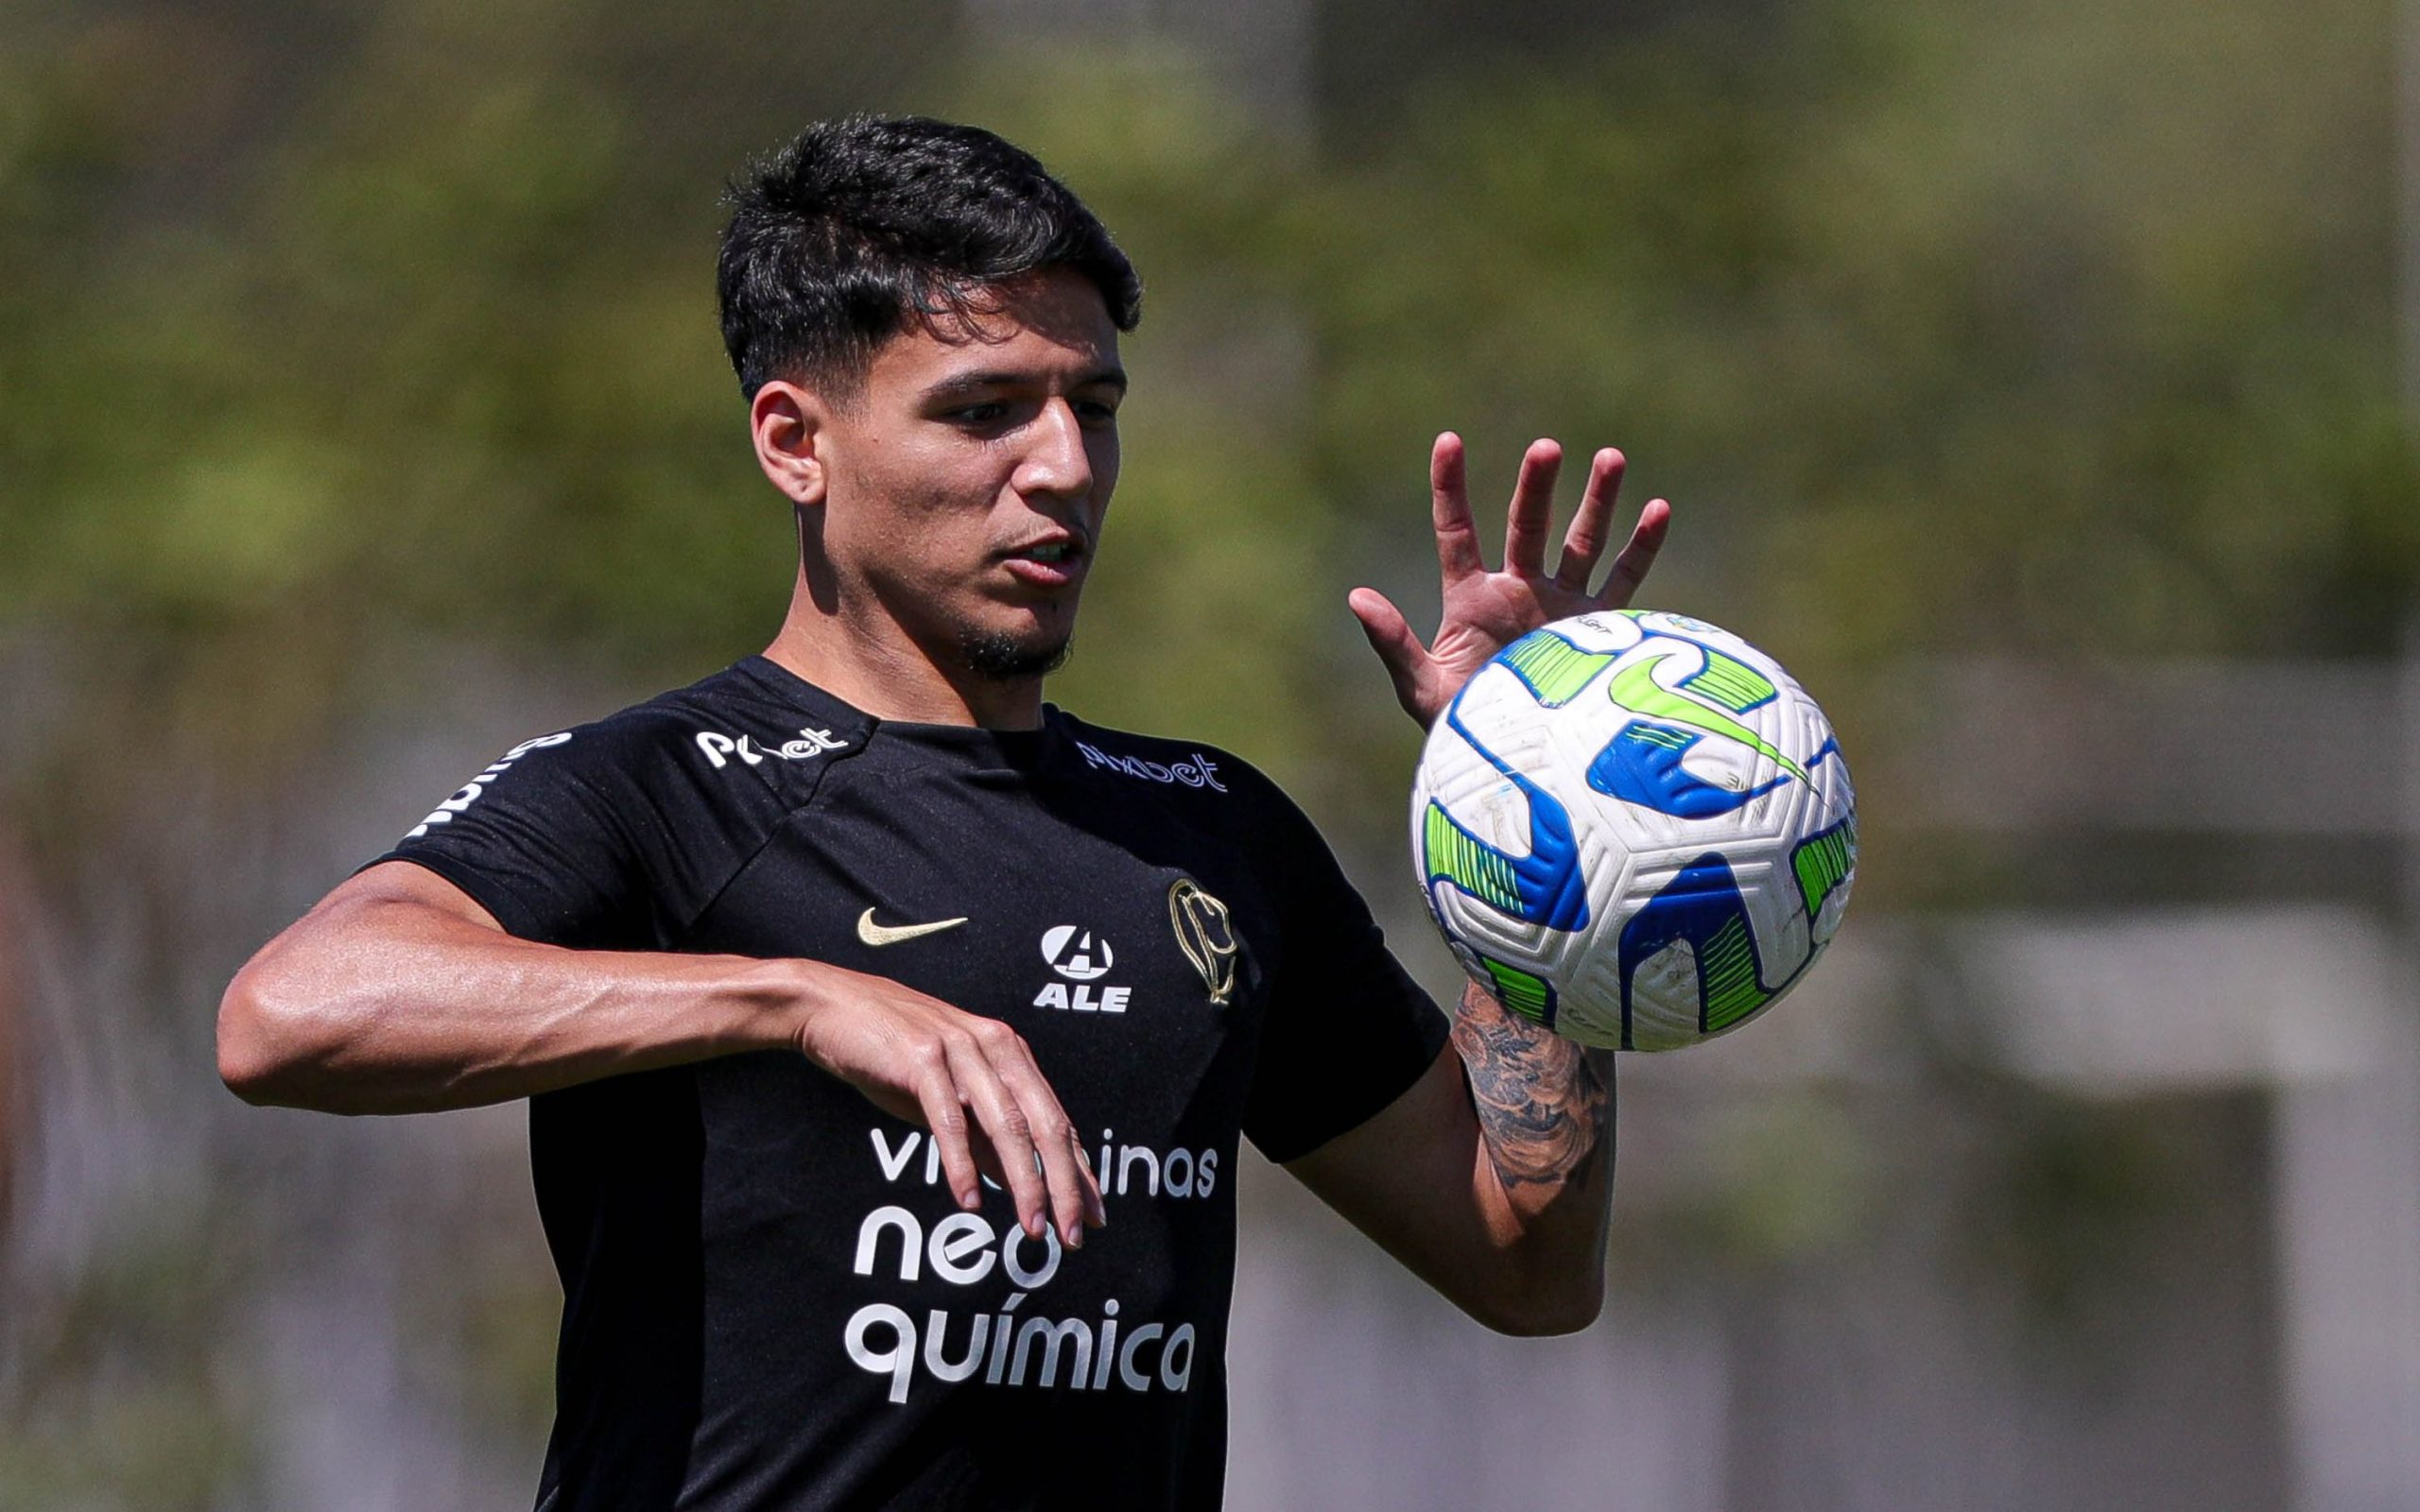 Inter confirma contratação do atacante Wesley Moraes - GAZ